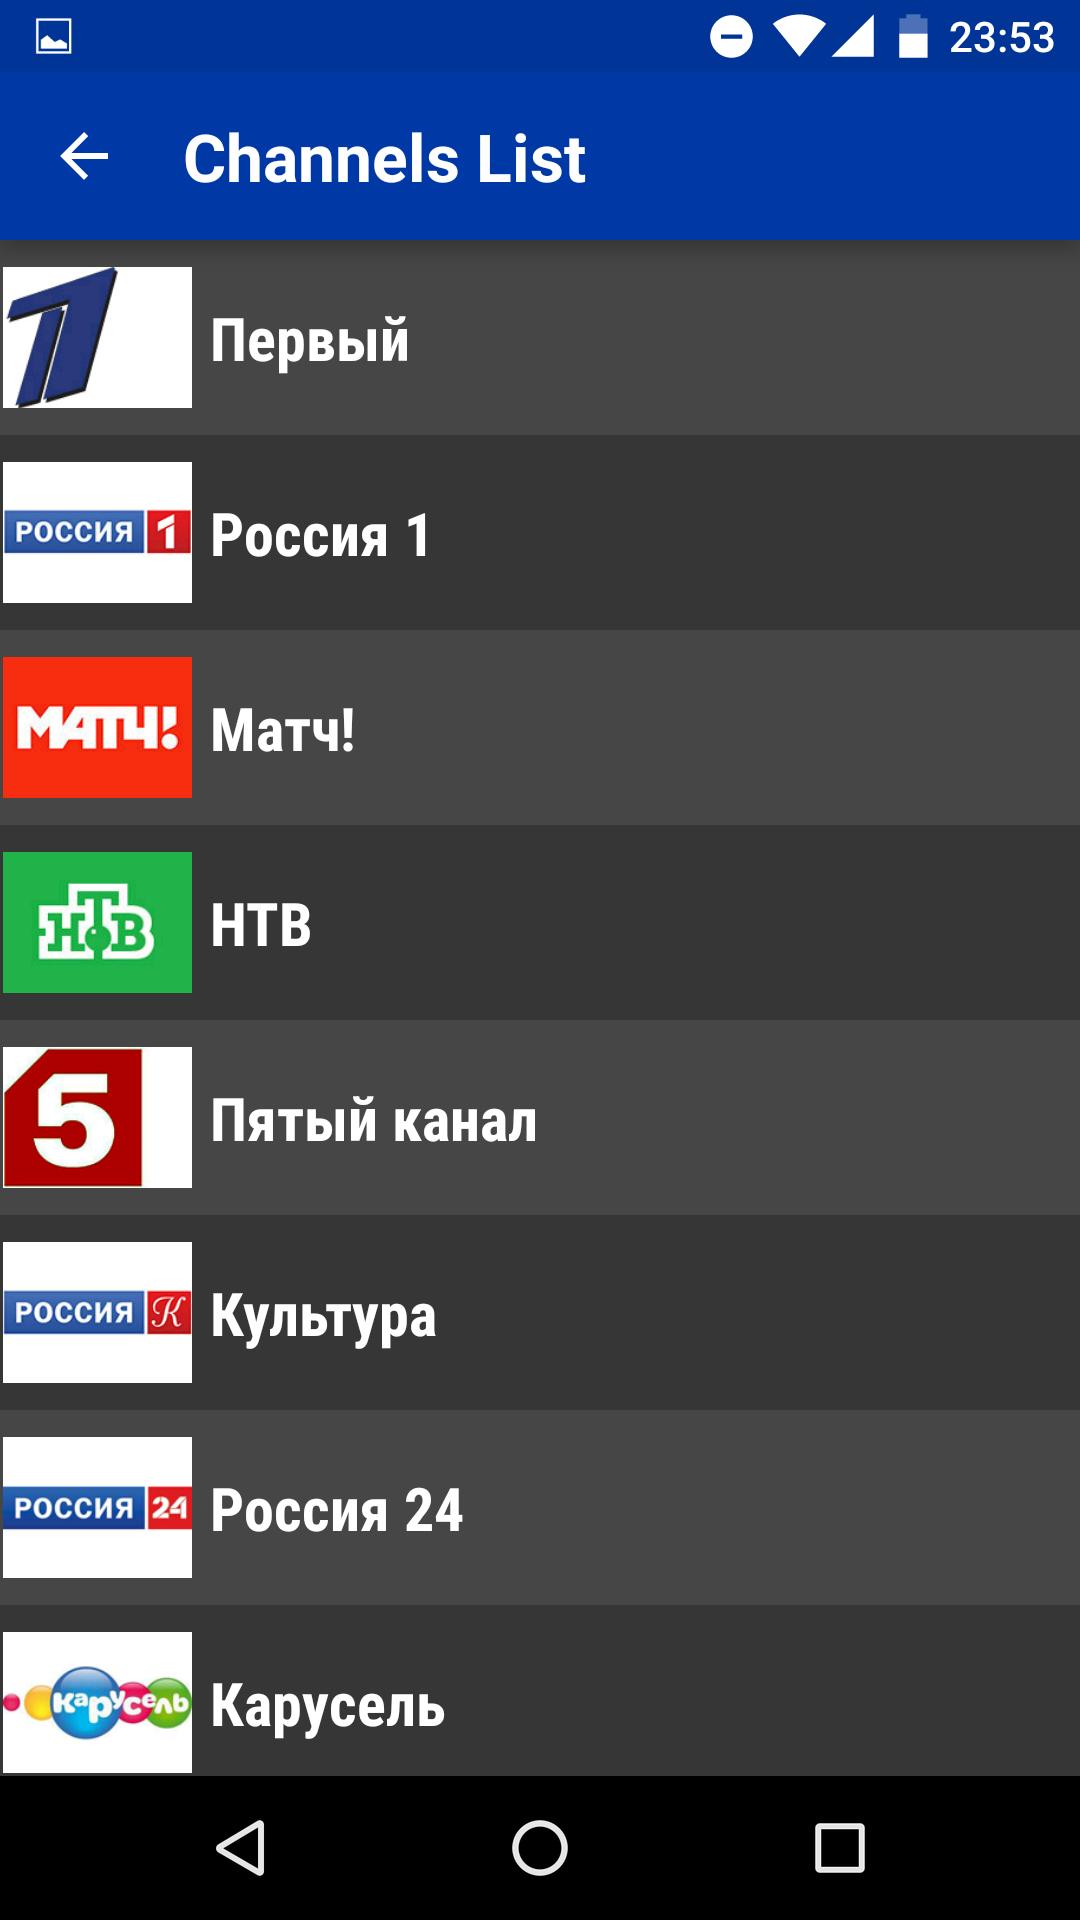 Russia TV Today - Free TV Schedule APK voor Android Download